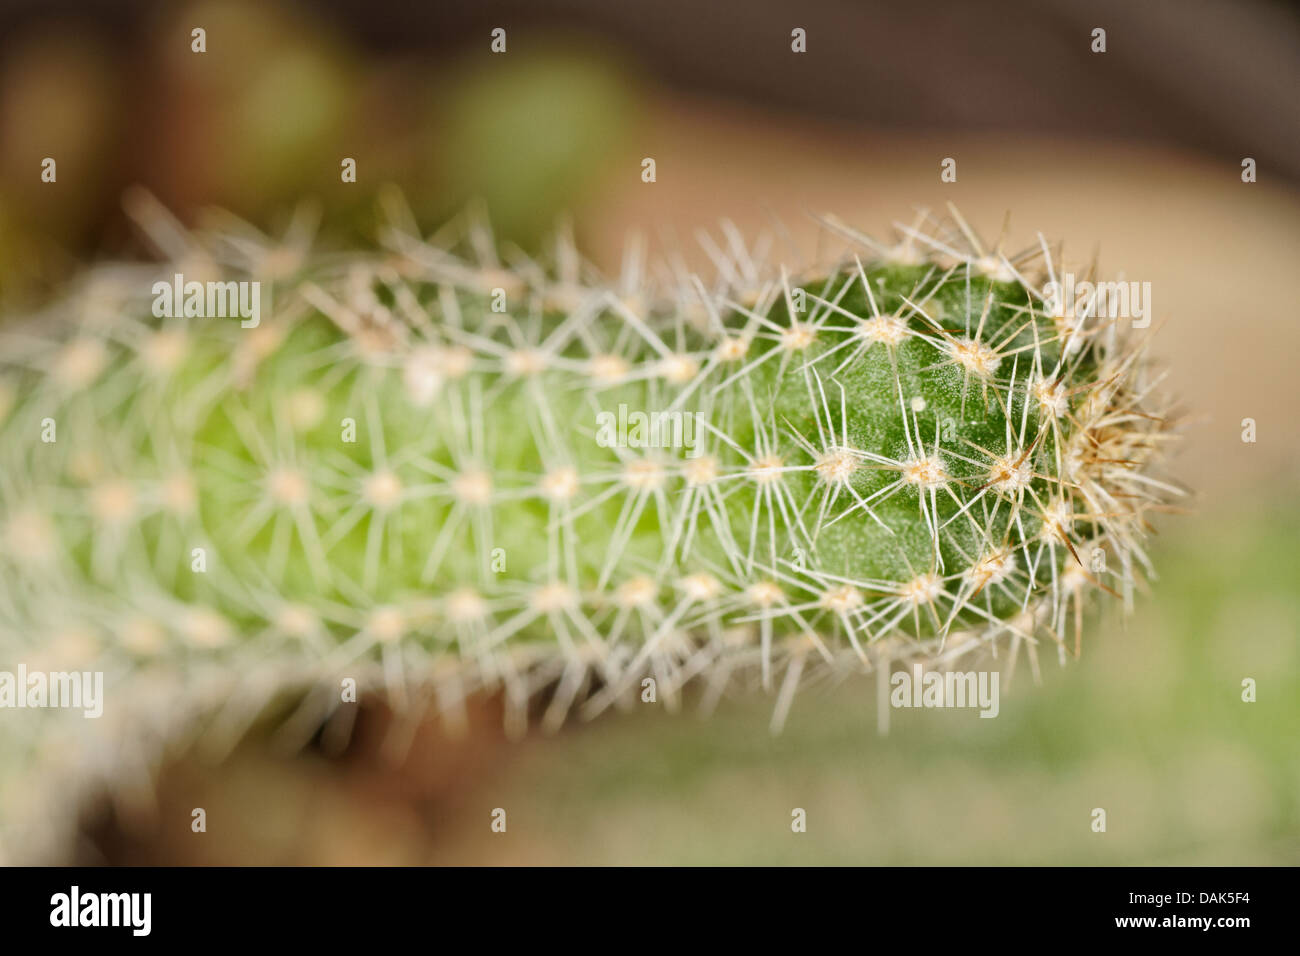 Aporocactus Flagelliformis, Rattail Cactus, Cactaceae Stock Photo